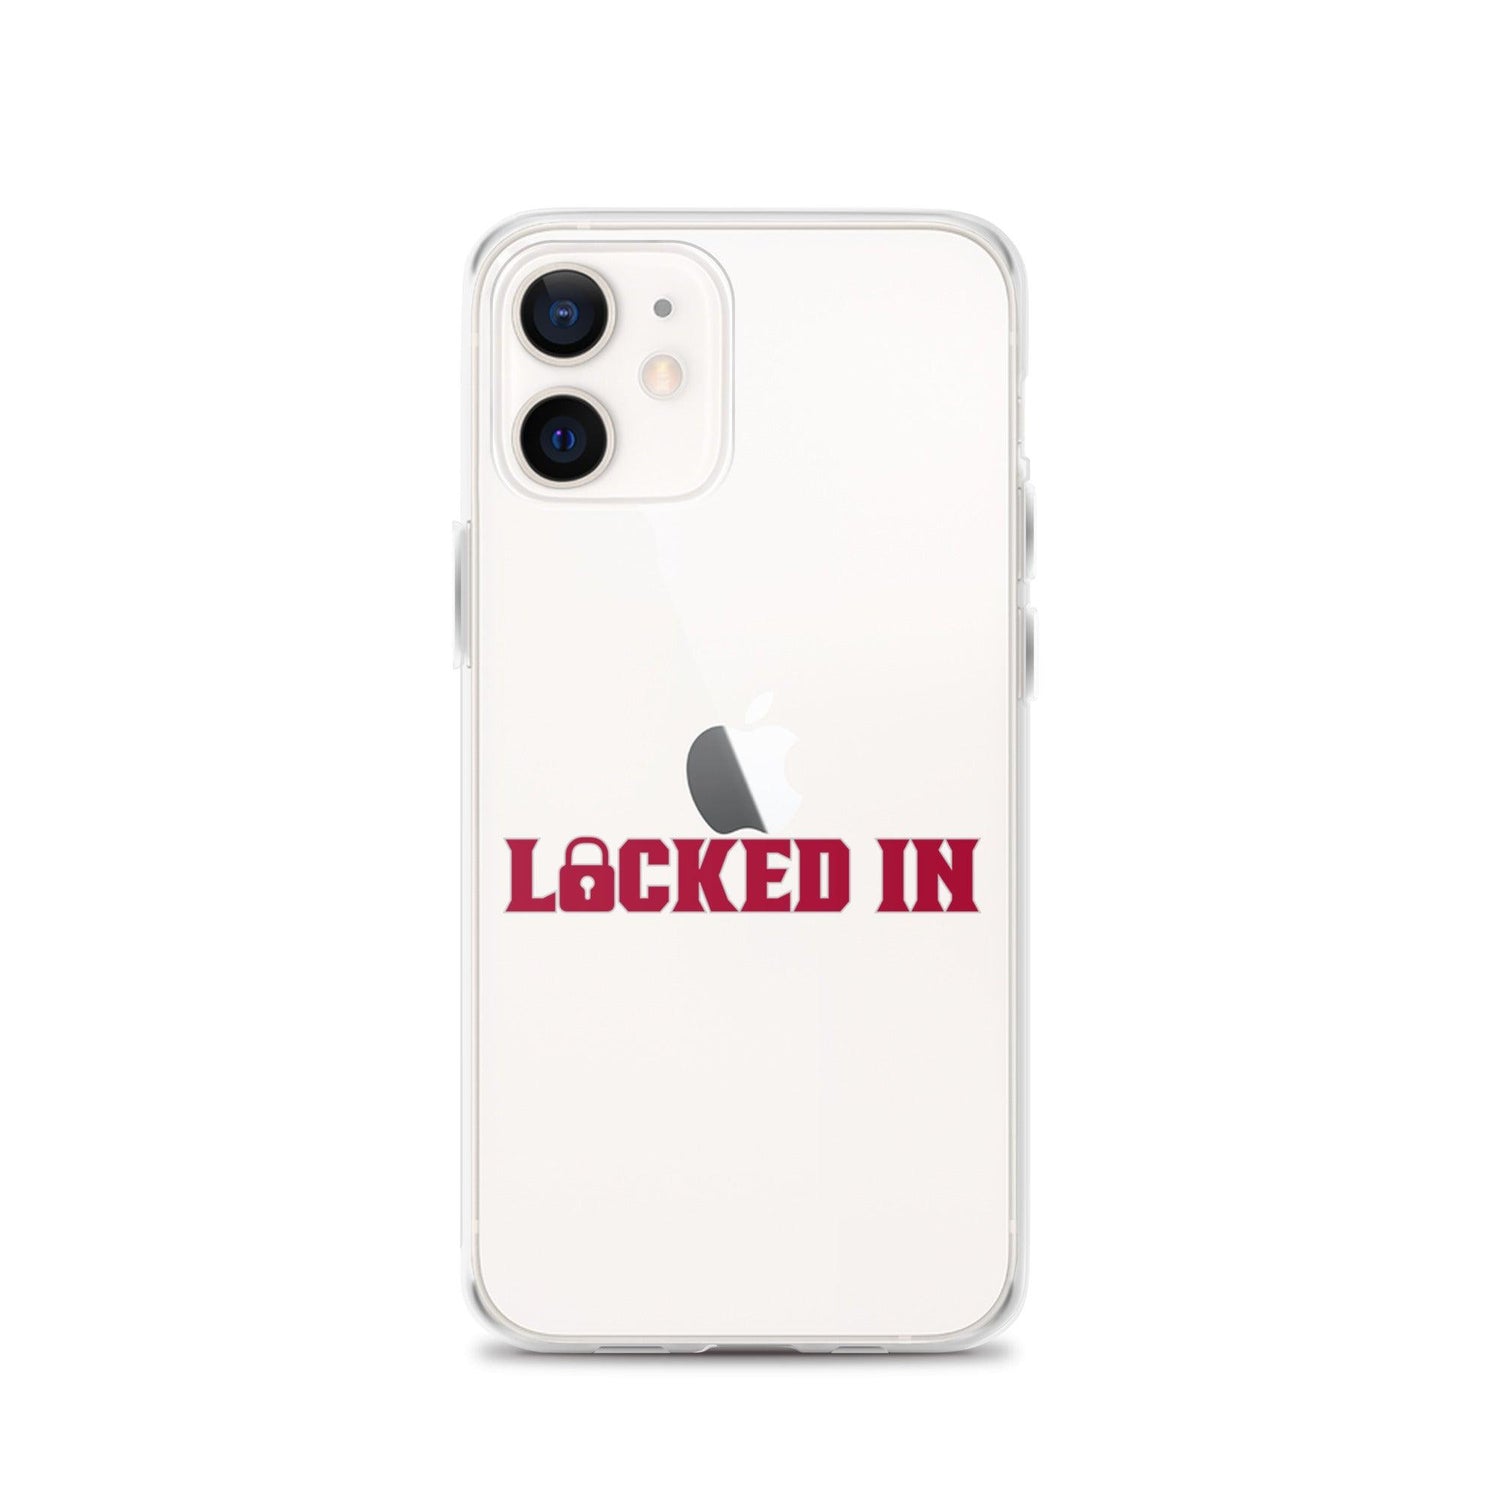 Monkell Goodwine "Locked In" iPhone Case - Fan Arch